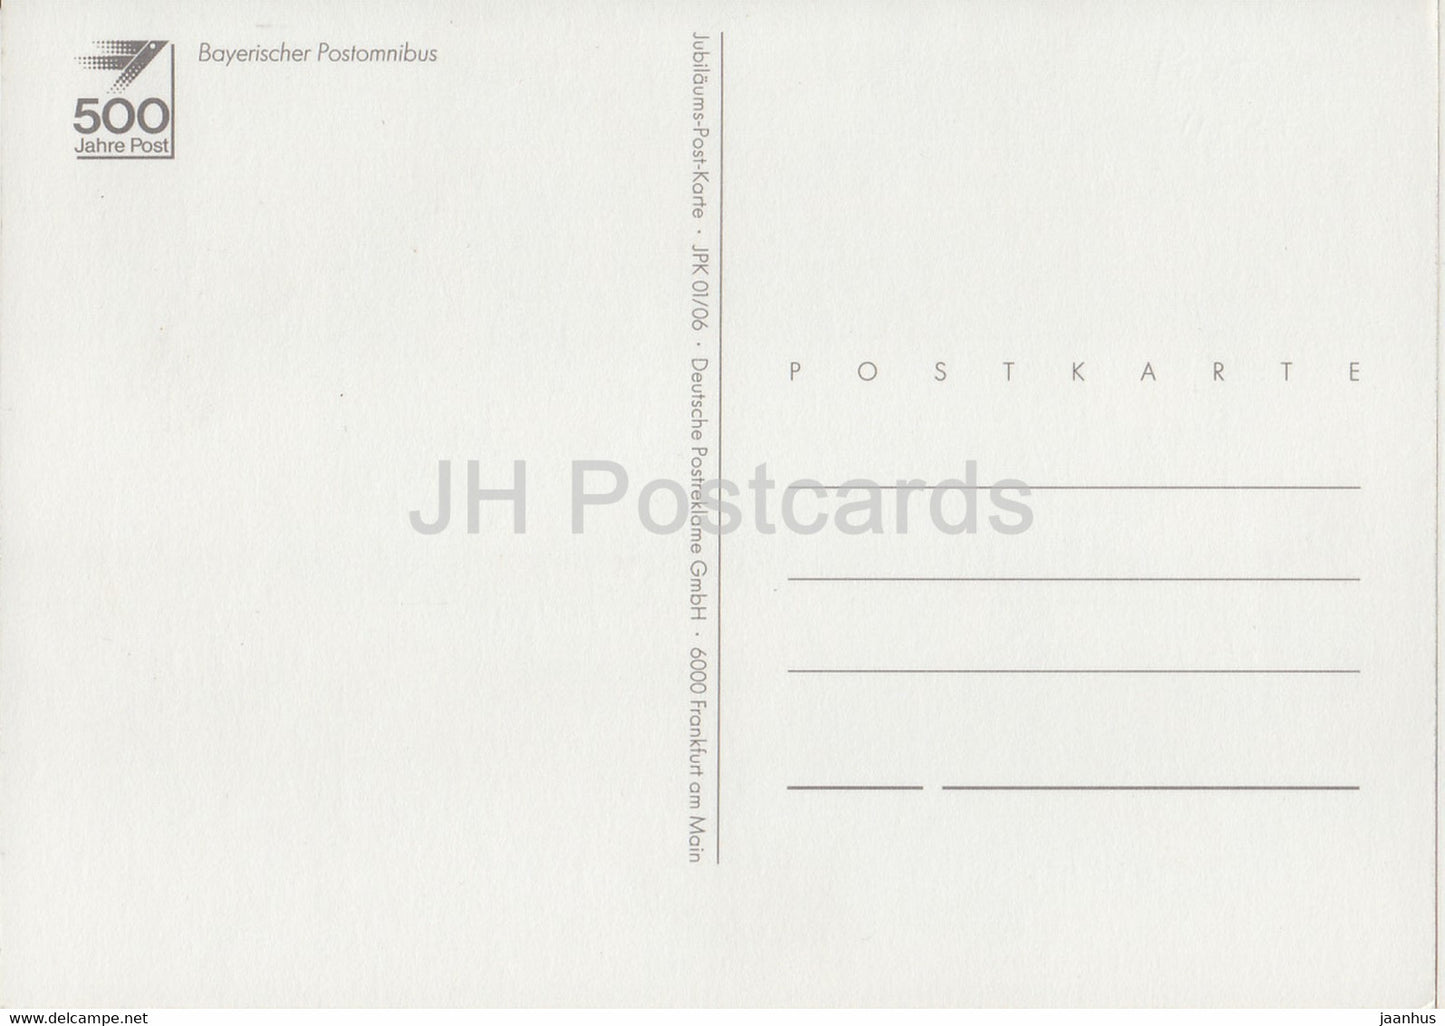 Bayerischer Postomnibus - Voiture postale - cheval - illustration - Allemagne - inutilisé